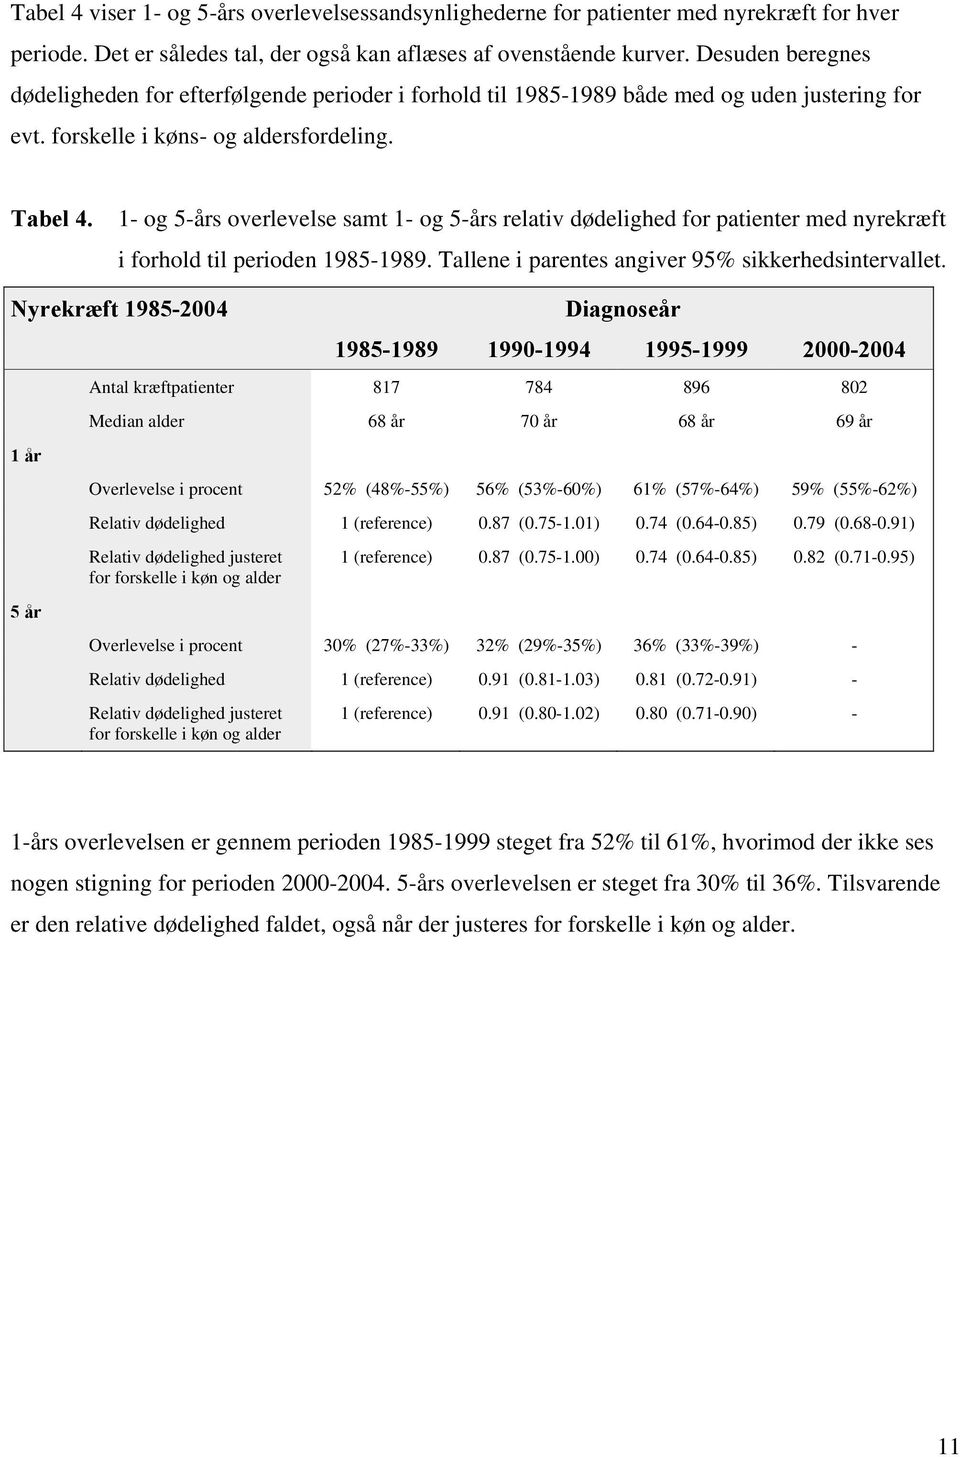 1- og 5-års overlevelse samt 1- og 5-års relativ dødelighed for patienter med nyrekræft i forhold til perioden 1985-1989. Tallene i parentes angiver 95% sikkerhedsintervallet.